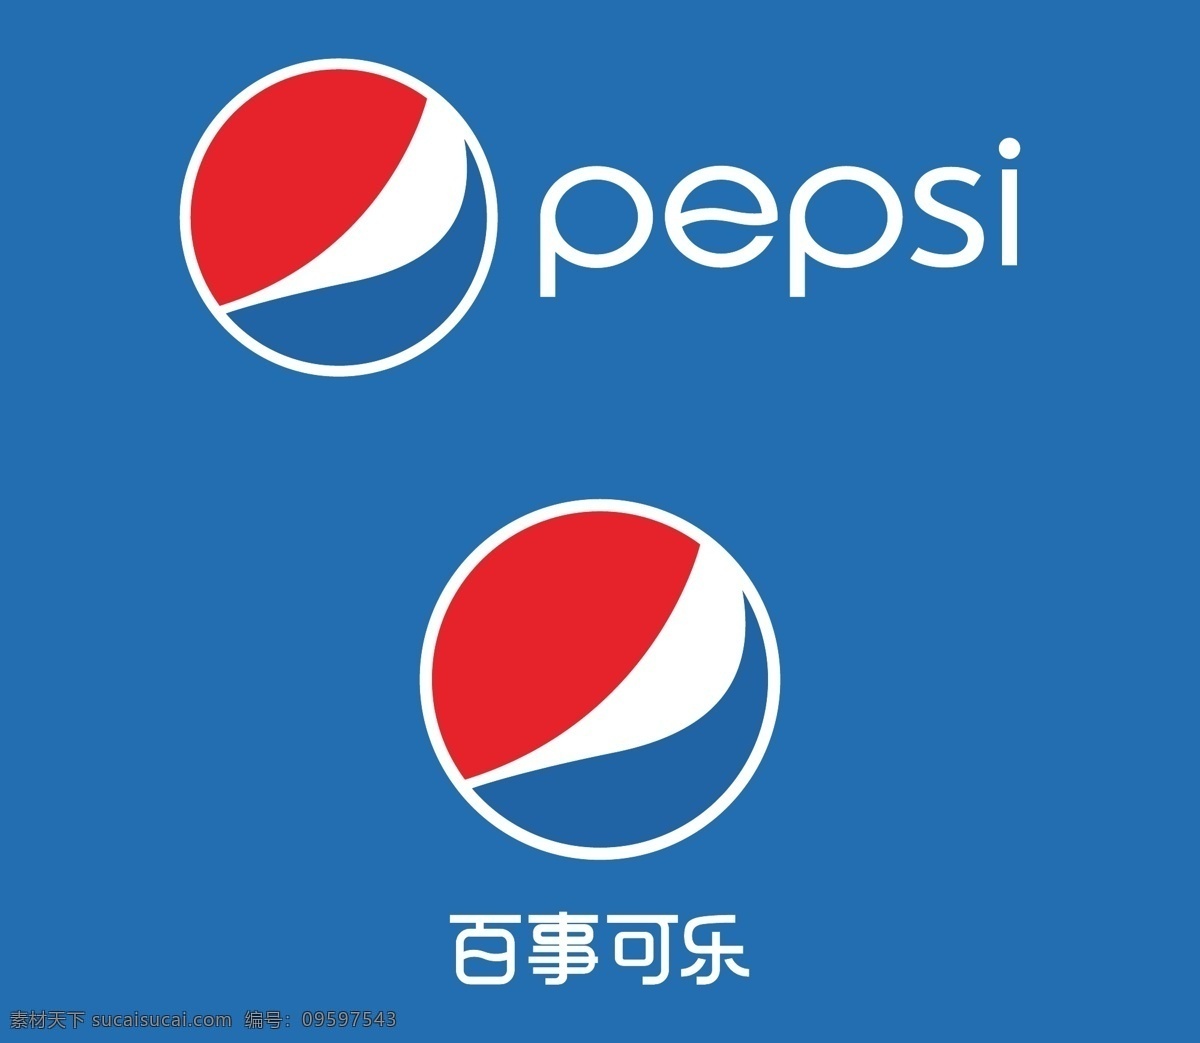 百事可乐 百事 可乐 pepsi cocacola 饮料 碳酸饮料 碳酸 食品 品牌 商标